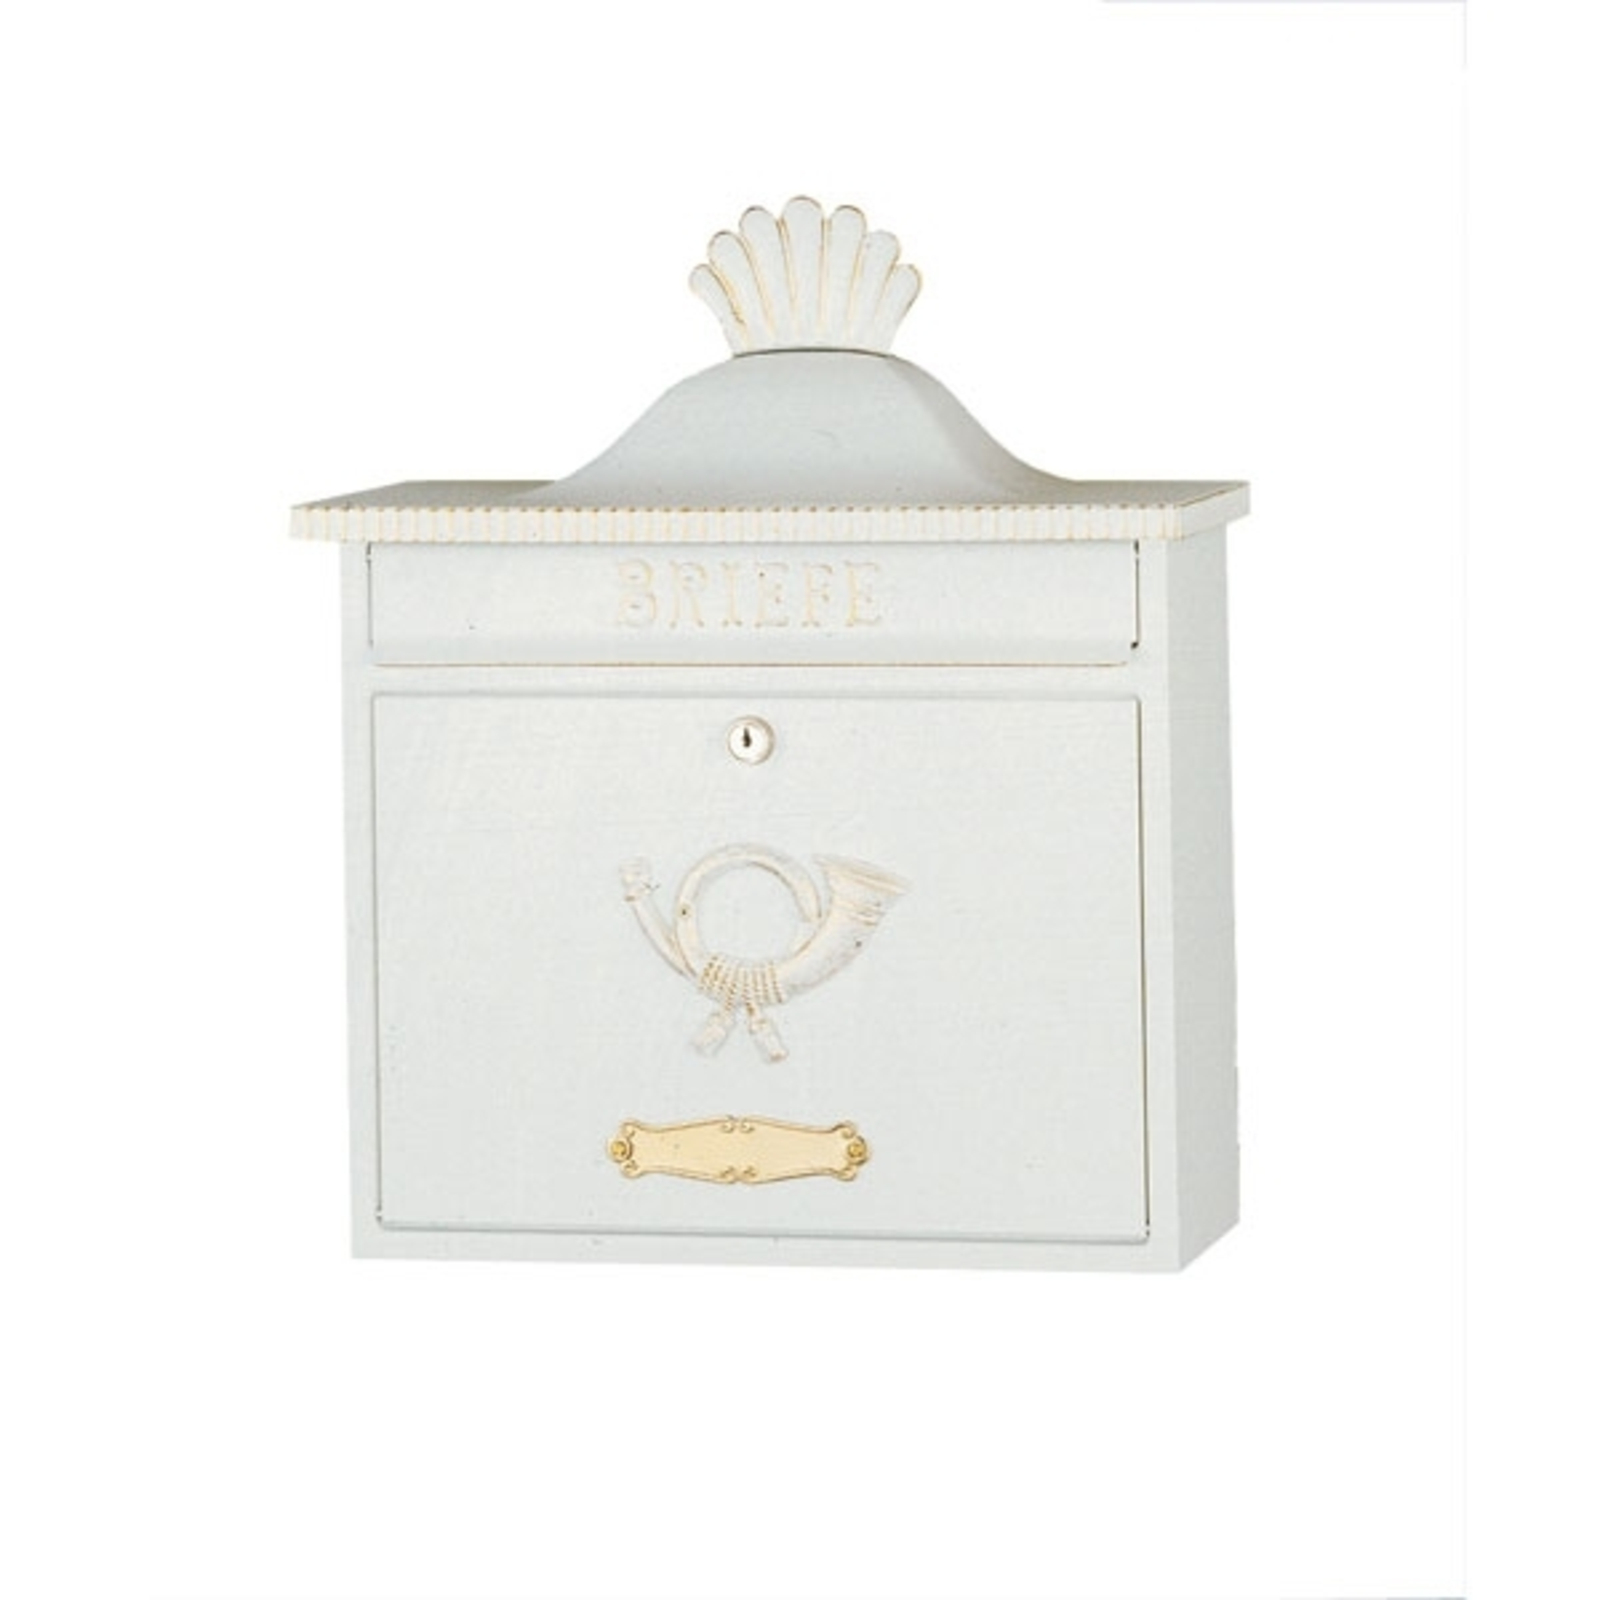 TRAKO klasikinio dizaino laiškų dėžutė, balta / auksinė